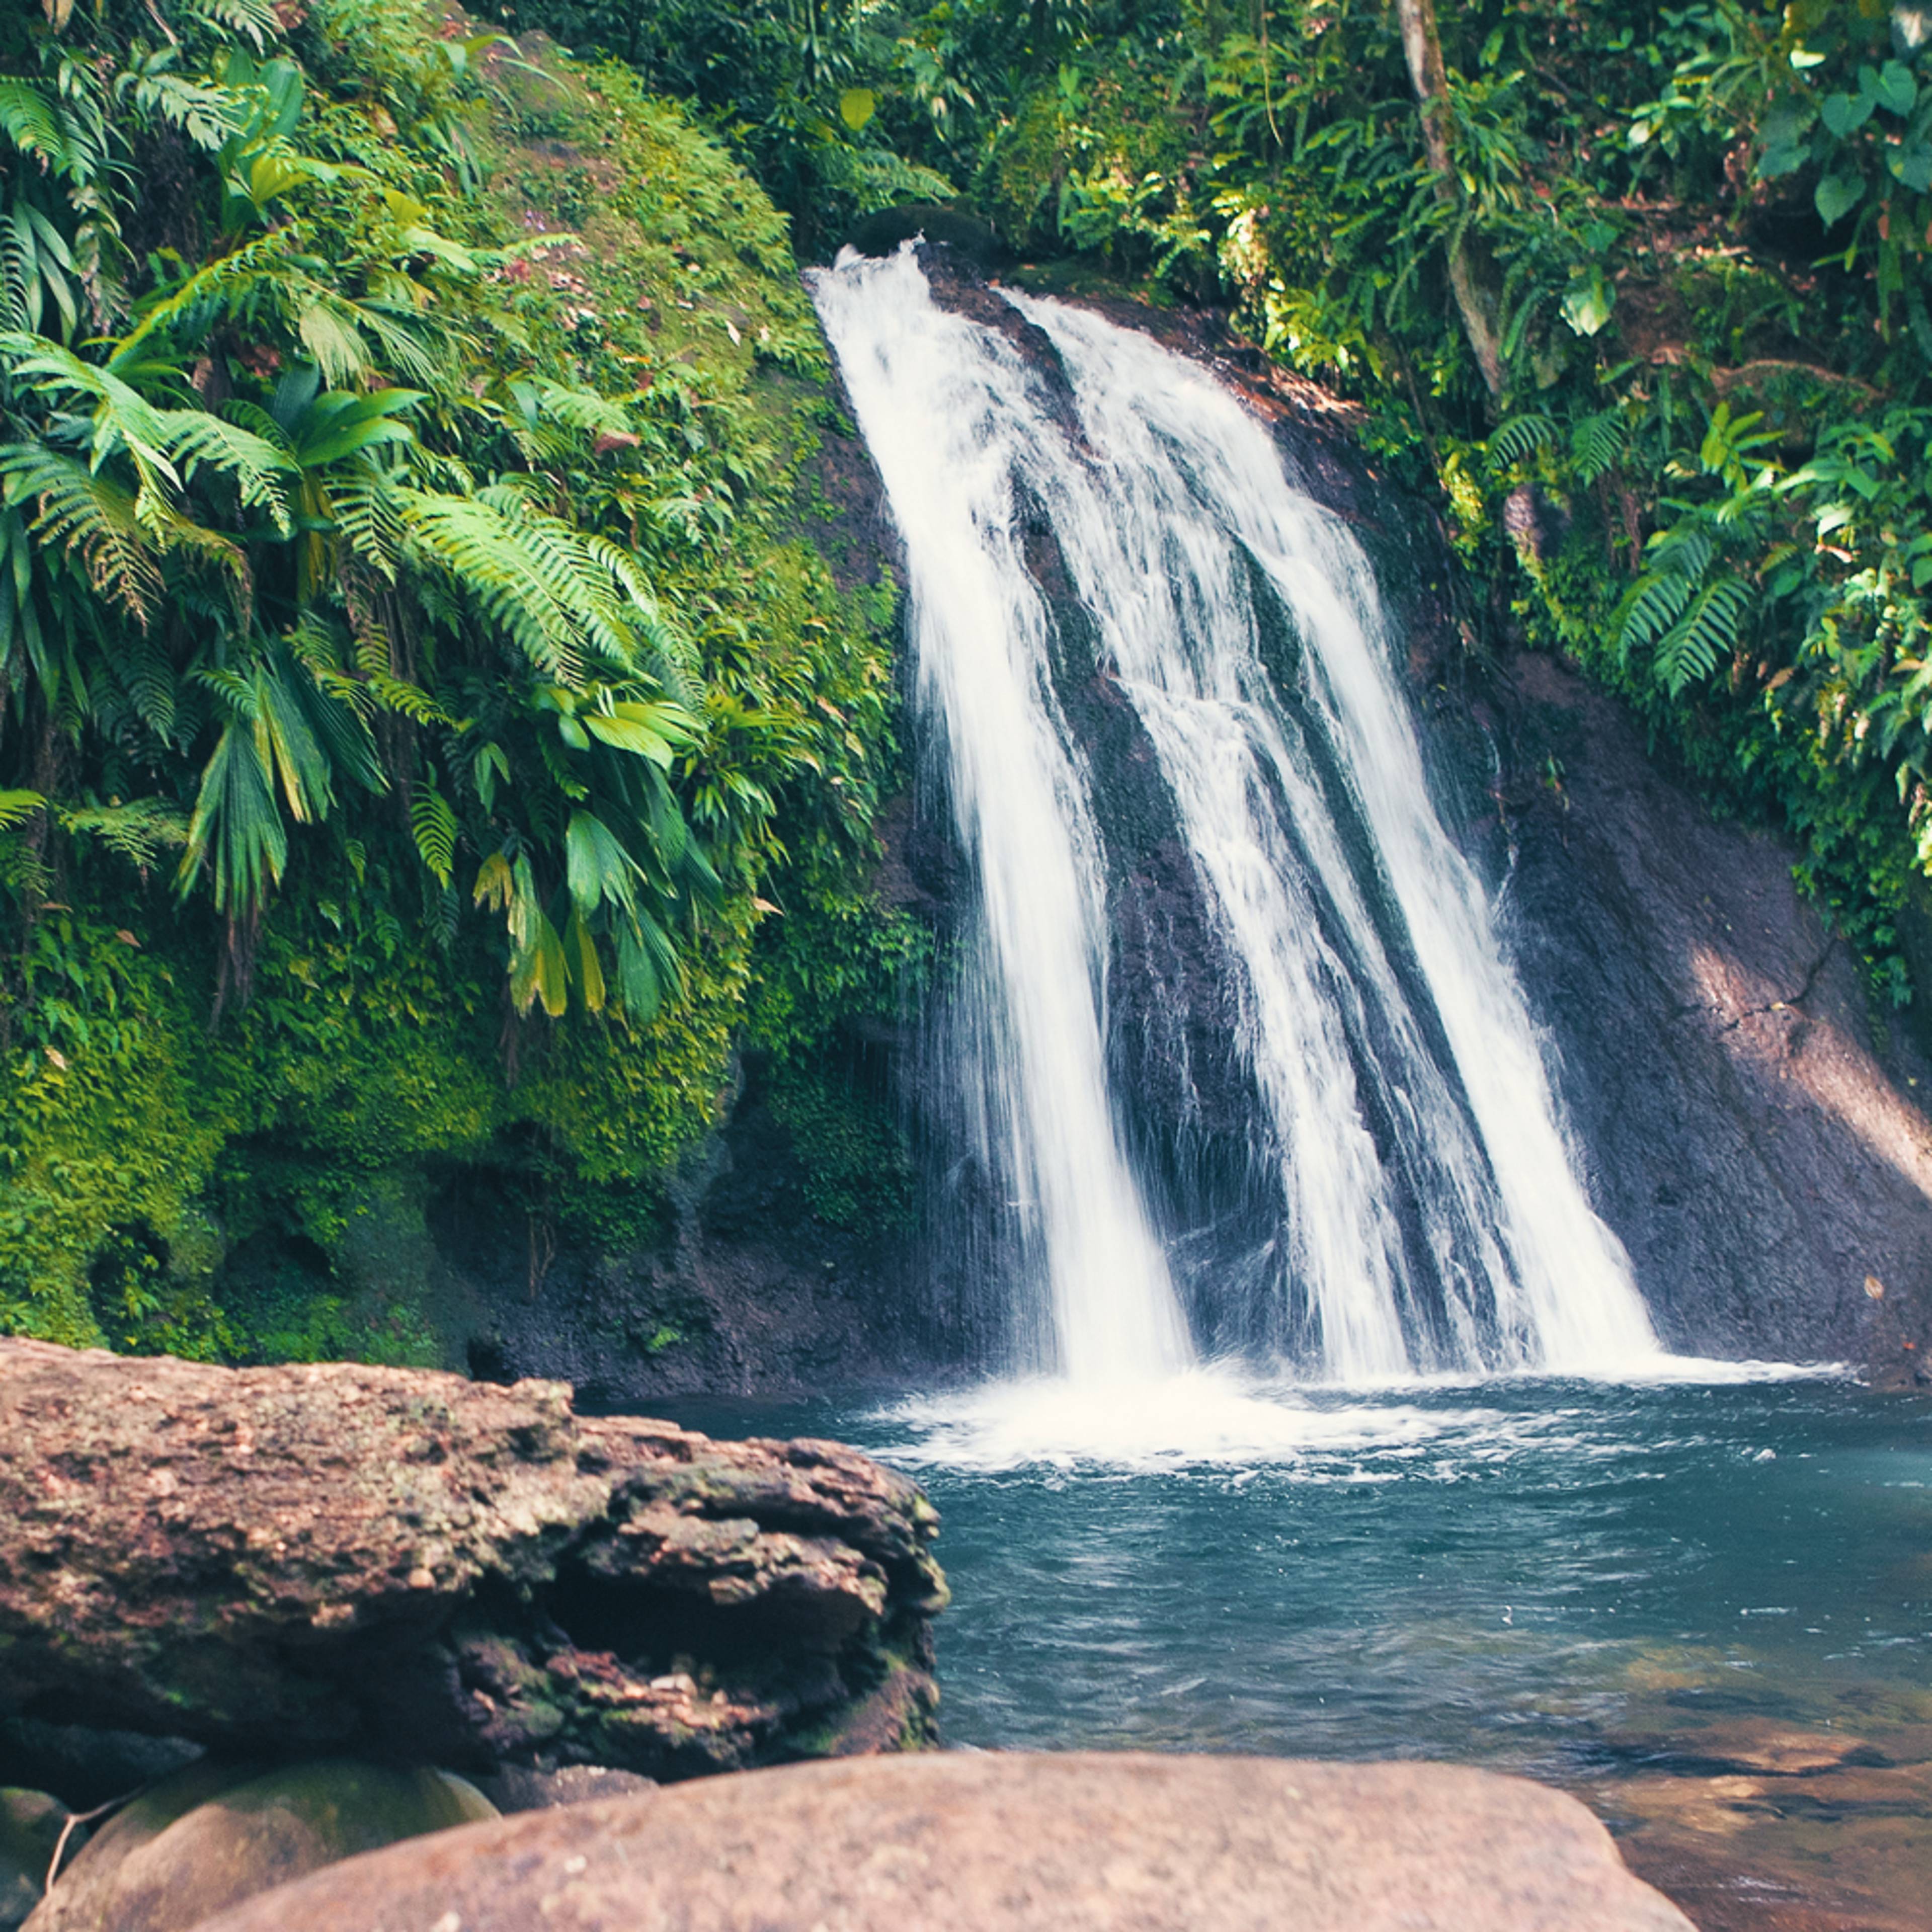 Votre voyage au cœur des grands espaces naturels en Guadeloupe